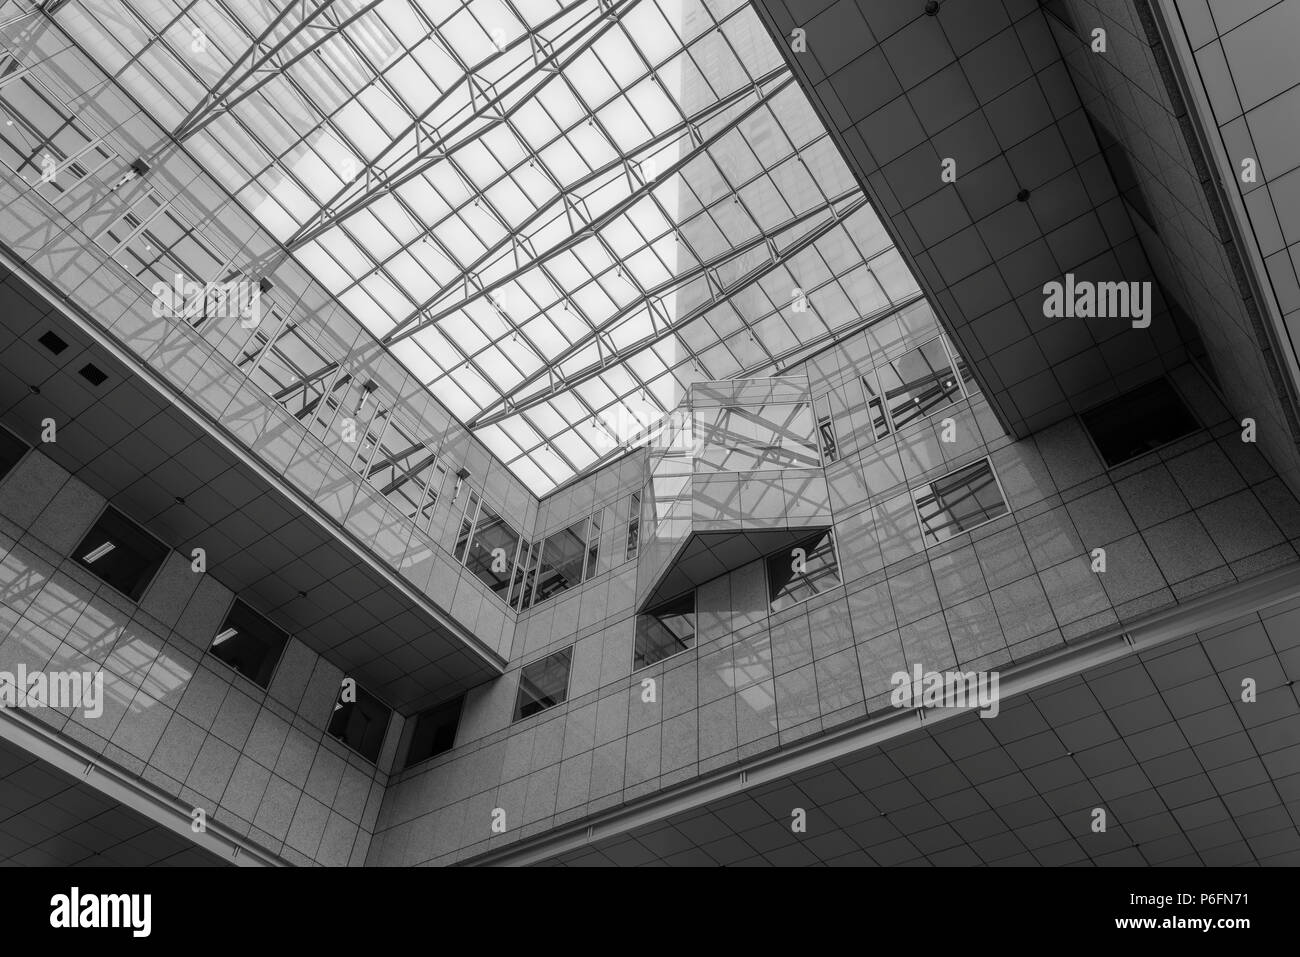 Singapour - 30 juin. 2018 : banque de Singapour à partir de l'intérieur du bâtiment jusqu'à l'intermédiaire du toit de verre Banque D'Images